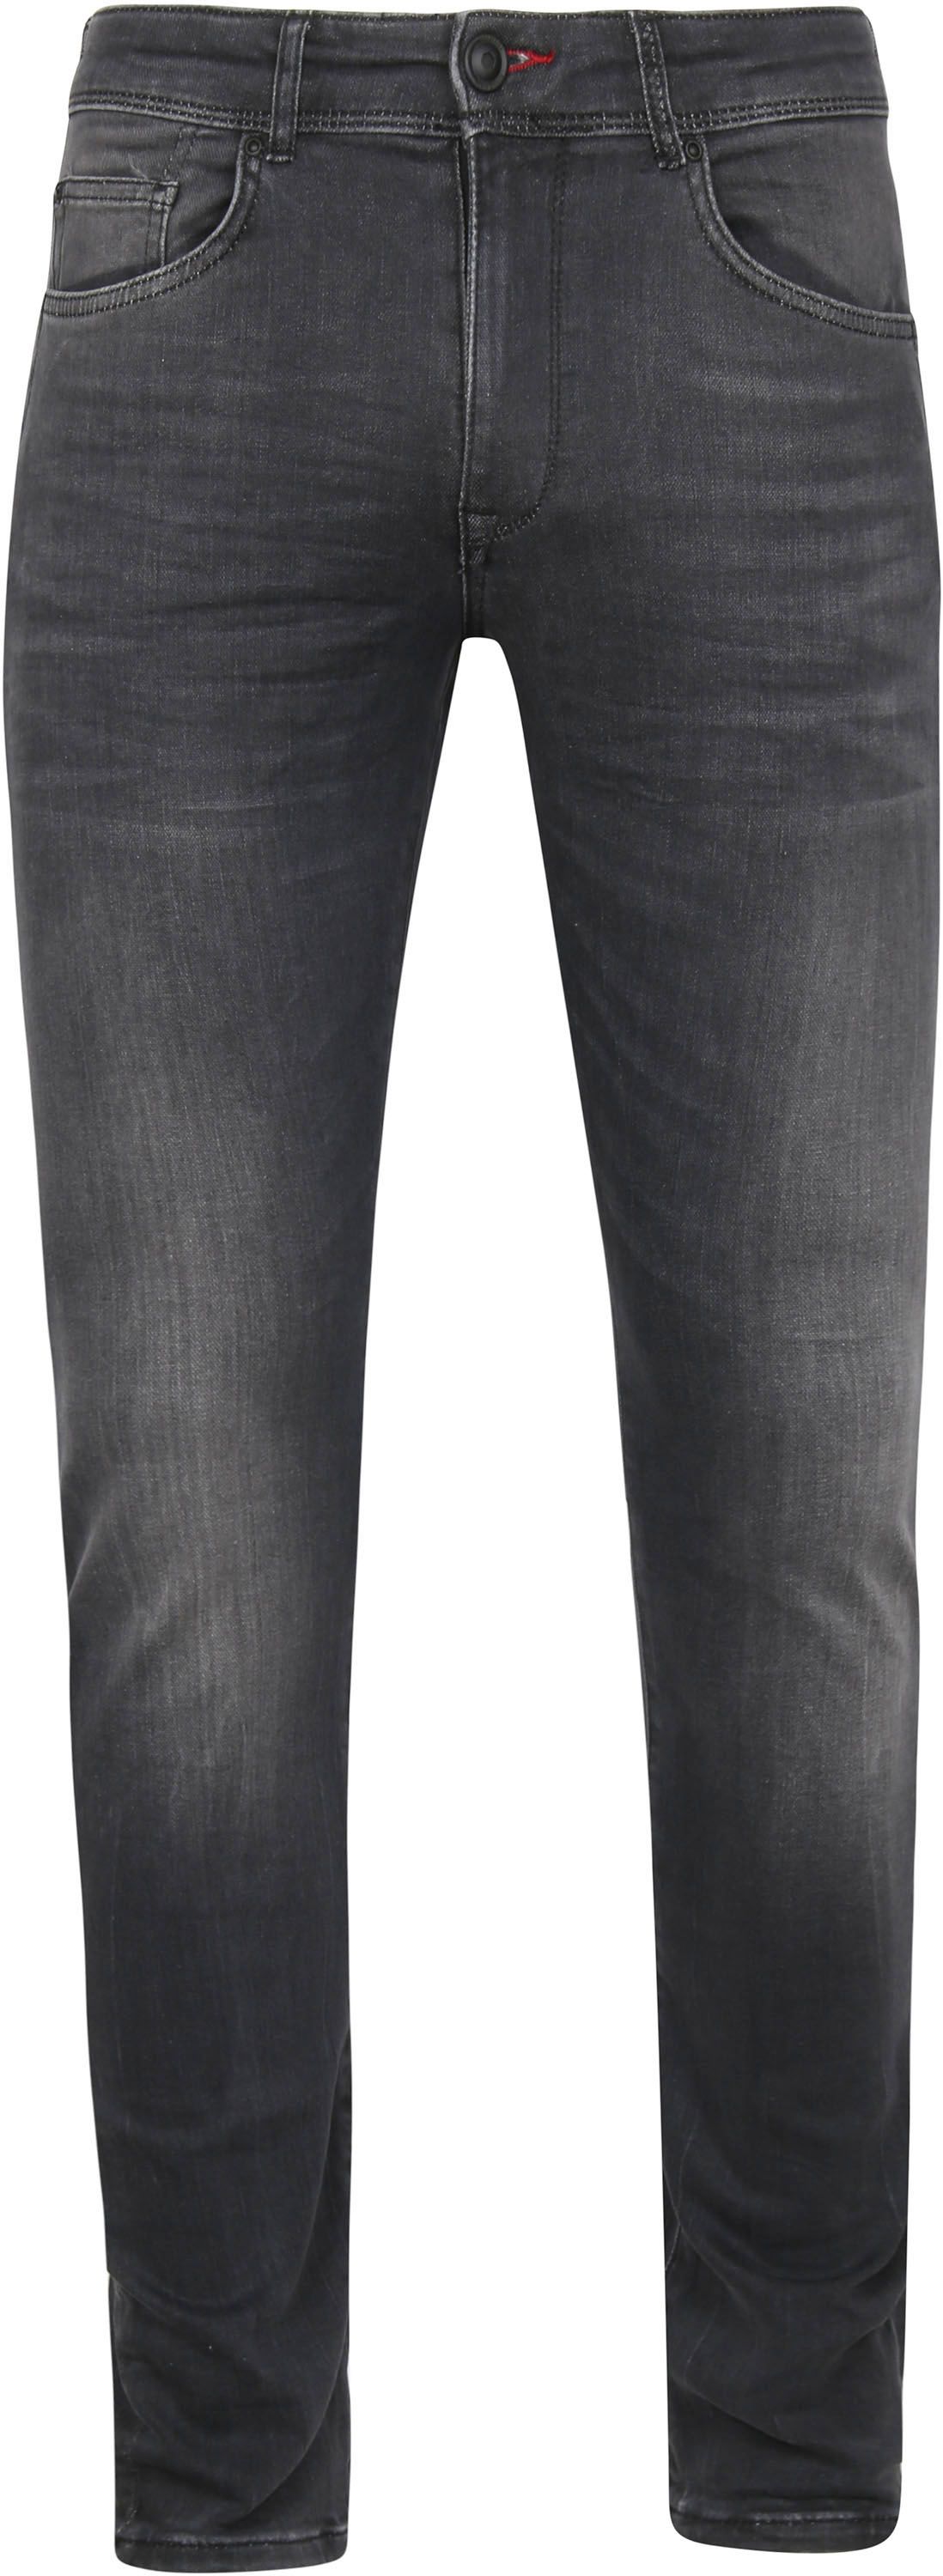 Petrol Jackson Denim Jogg Jeans Black Dark Grey size W 33